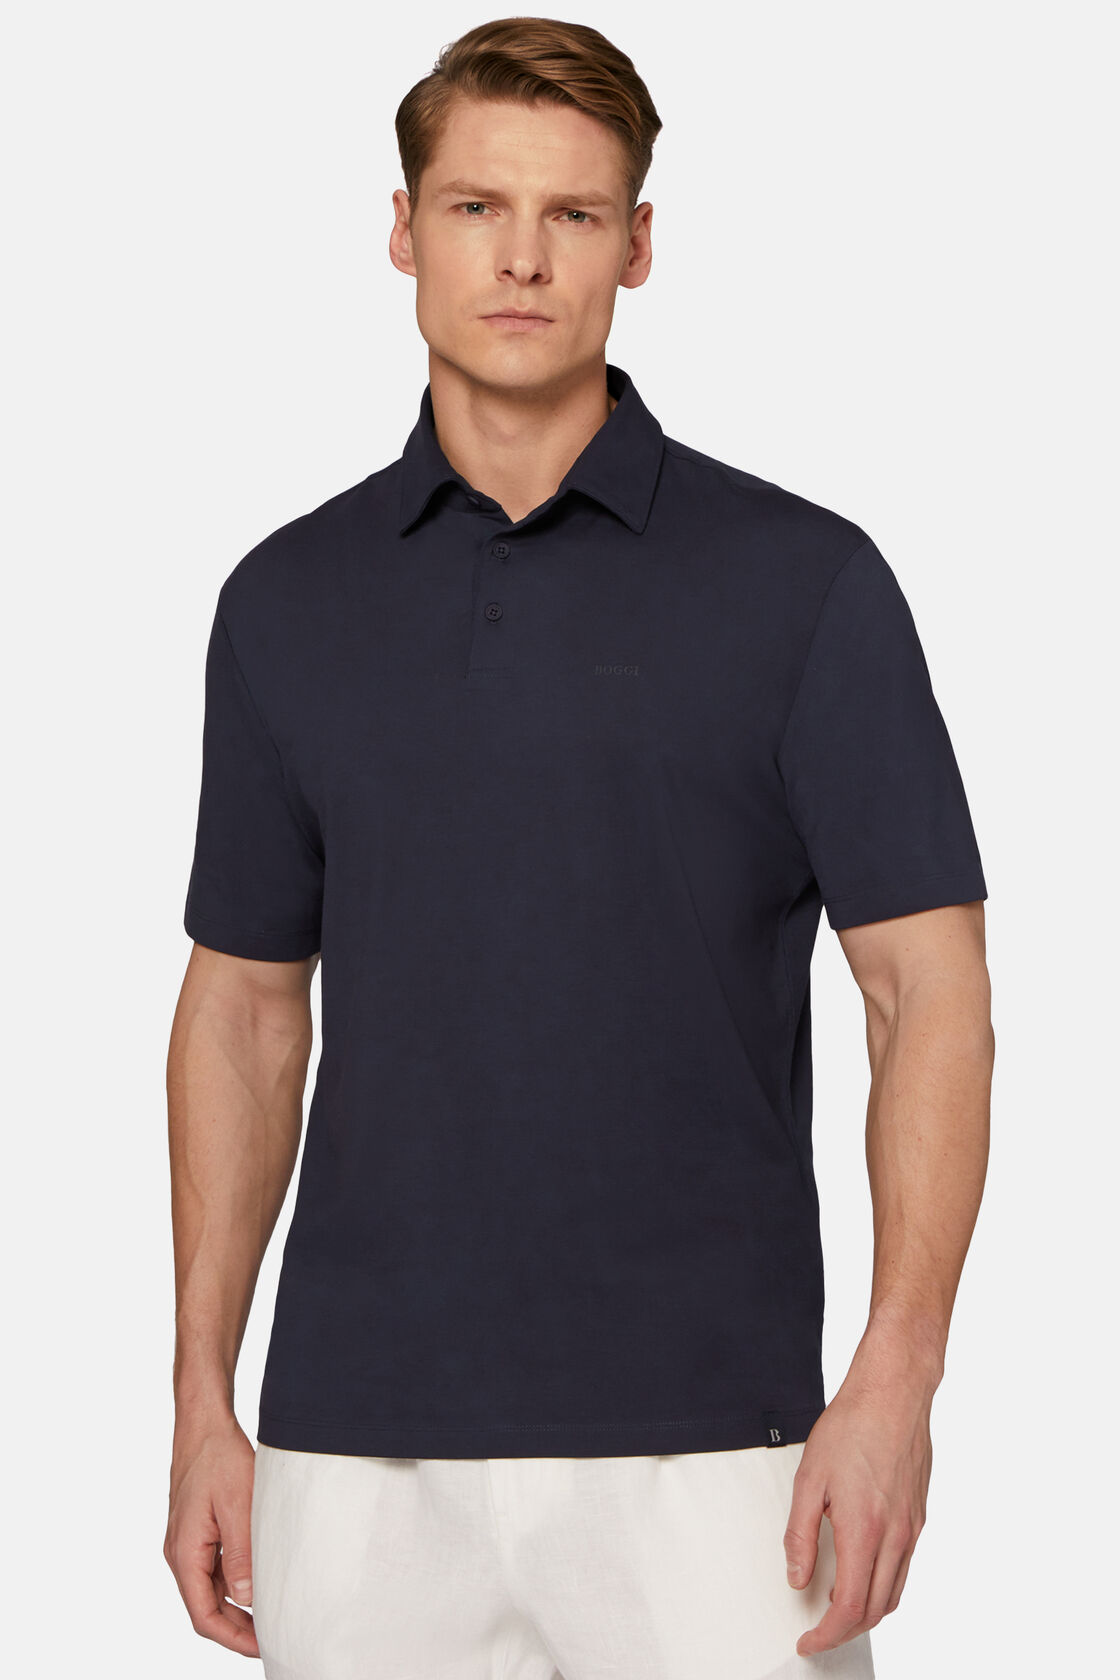 Μπλουζάκι πόλο από ελαστικό βαμβάκι Supima, Navy blue, hi-res